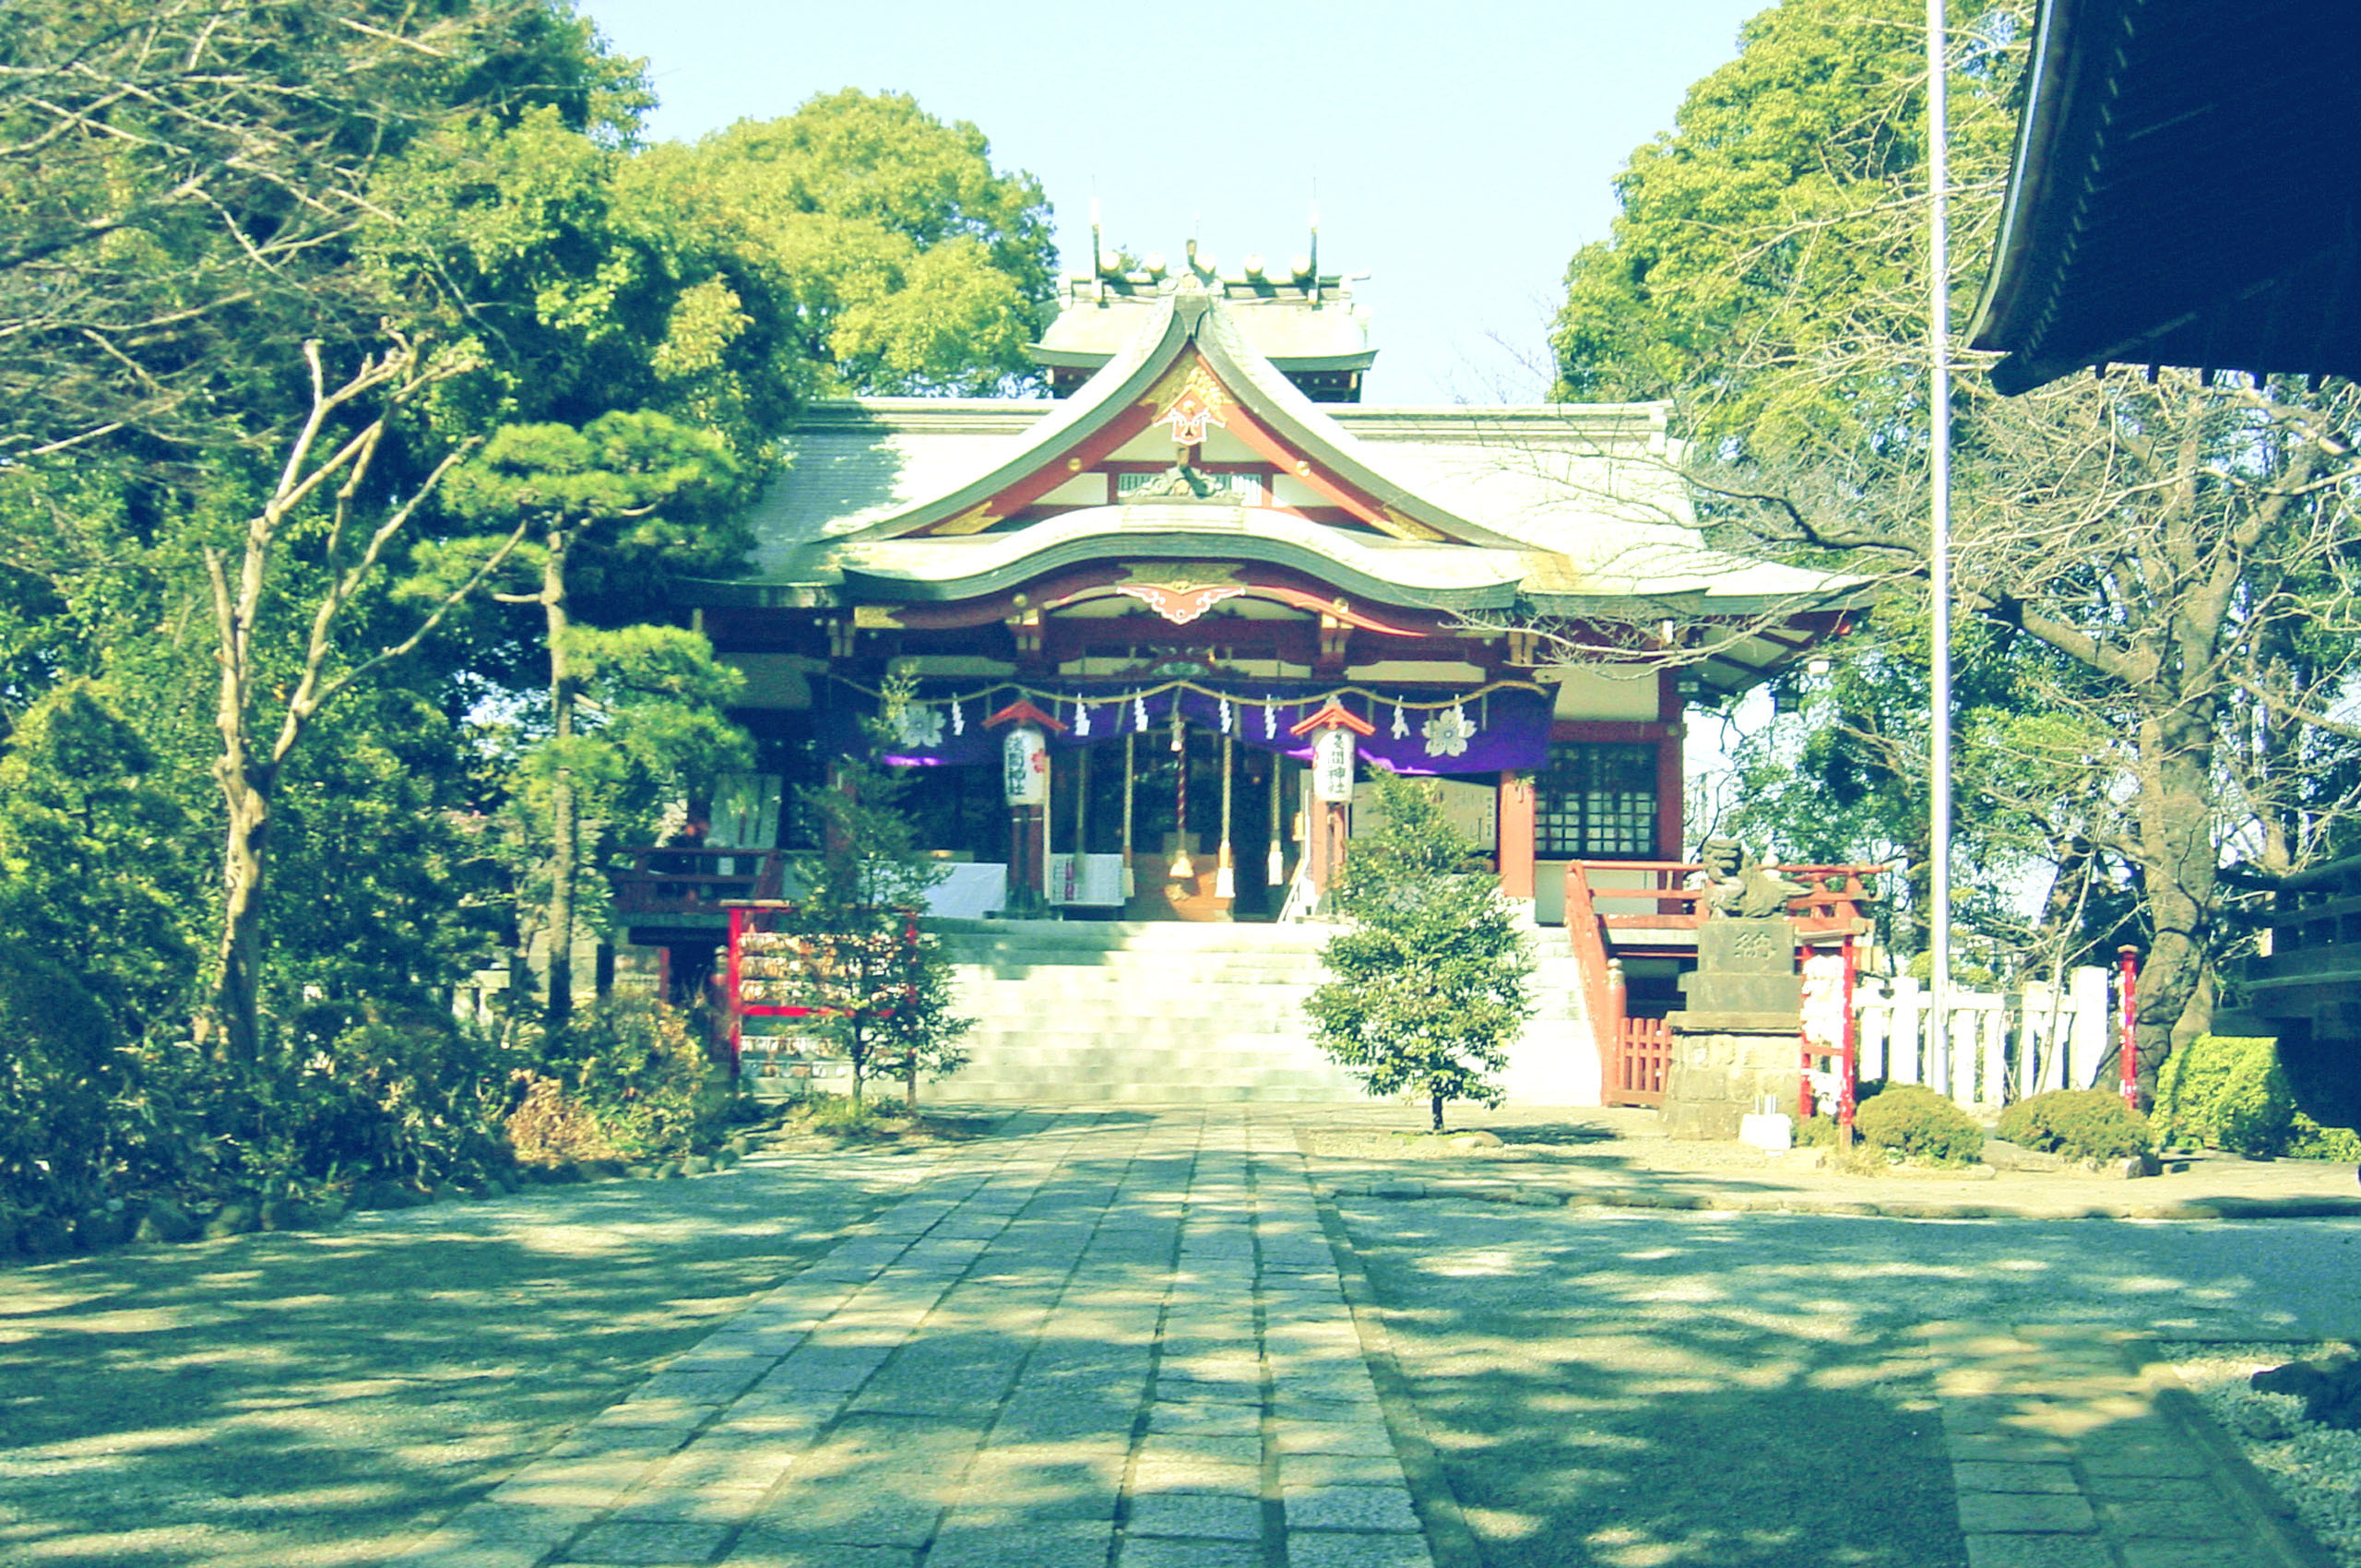 ノベルゲーム の 背景 に使える 神社 寺 の 無料 写真 シナリオライター空下元 個人サイト